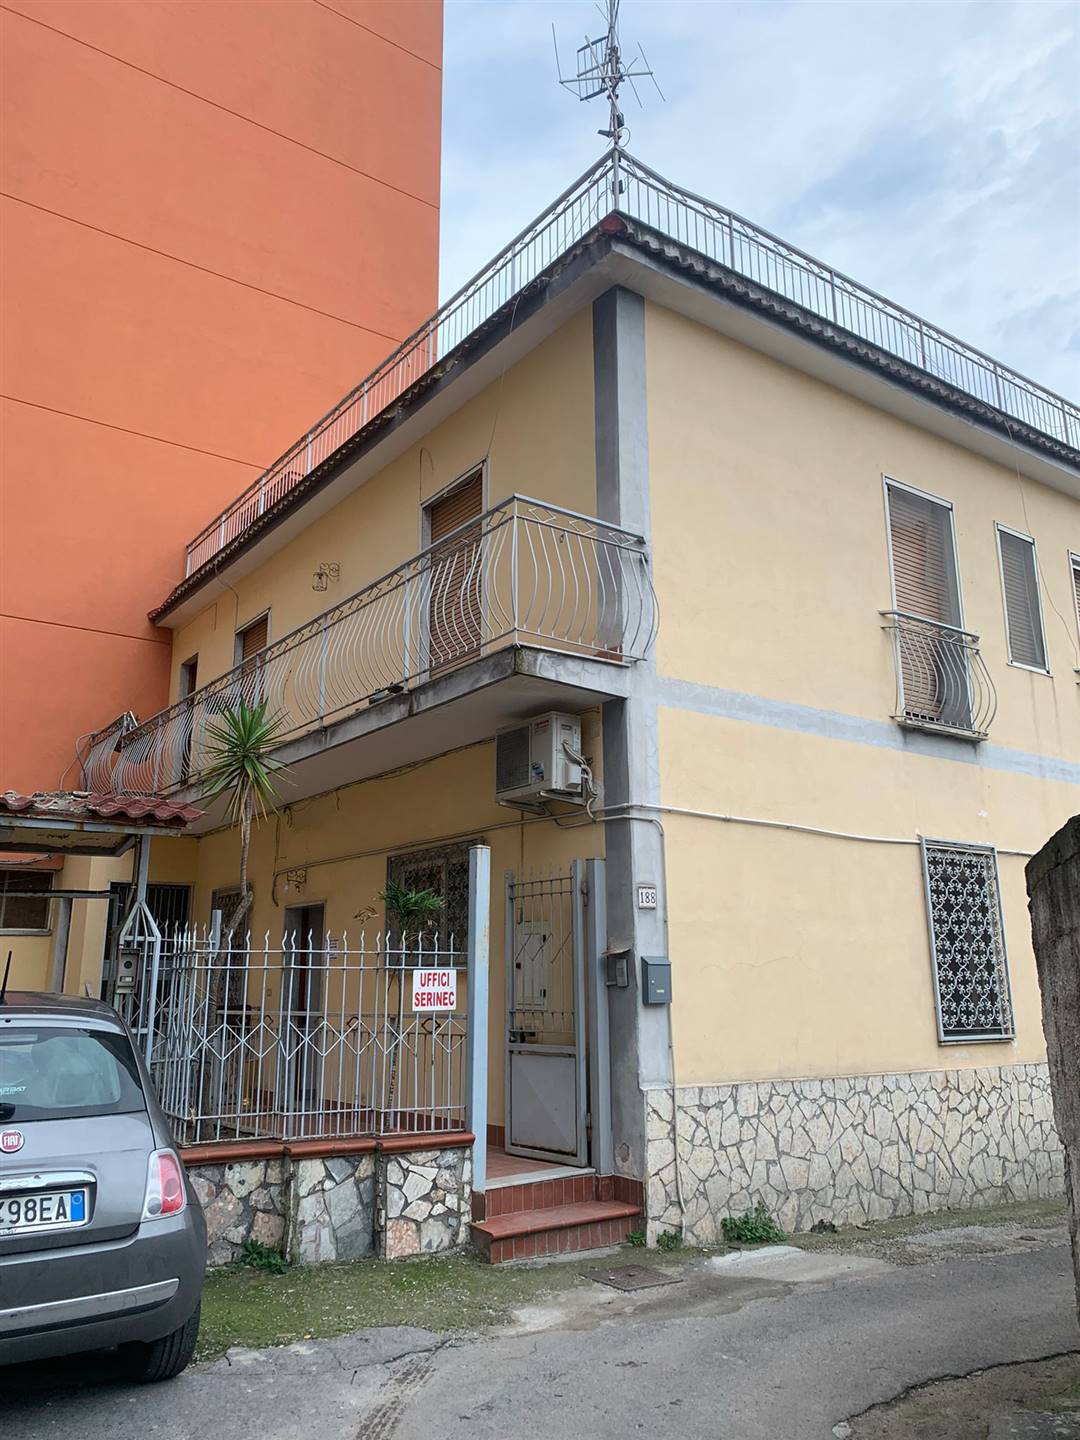 Villa Bifamiliare in vendita a Gragnano, 6 locali, prezzo € 395.000 | CambioCasa.it